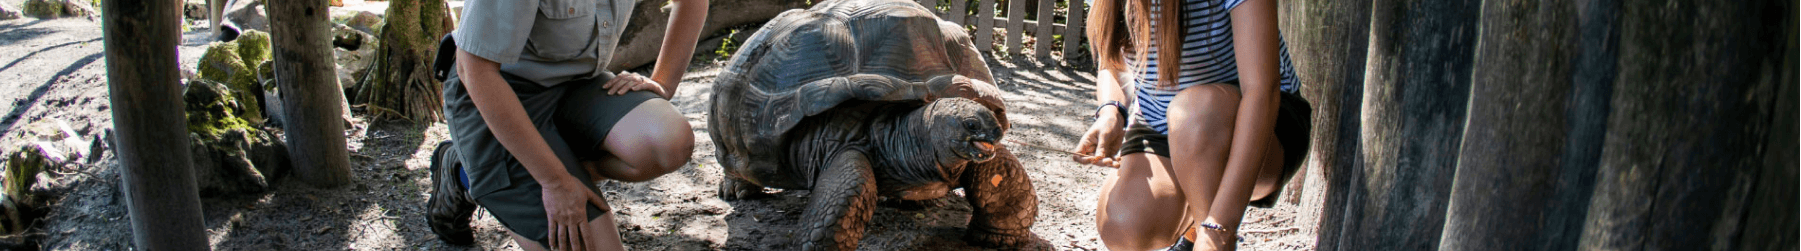 Aldabra Tortoise Insider Tour at Busch Gardens Tampa Bay